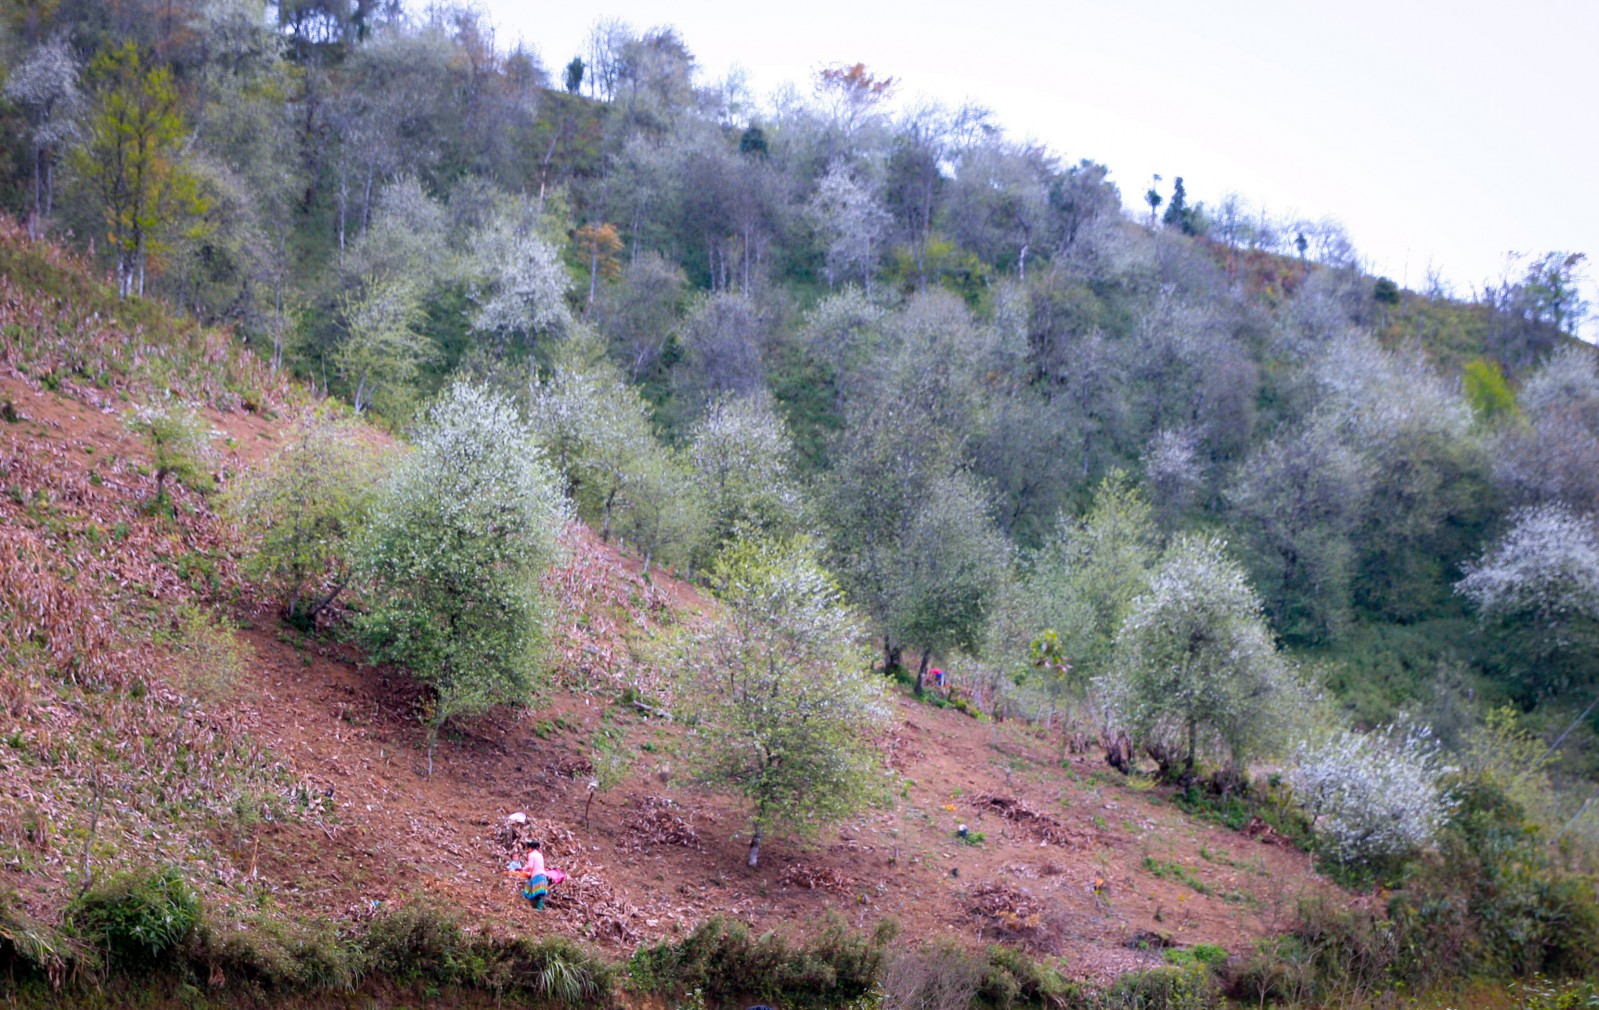 Là một trong những nơi có diện tích trồng táo mèo lớn nhất huyện Bắc Yên, khi trổ bông, núi đồi Xím Vàng bừng sáng và ngập tràn màu trắng trong sắc xuân.